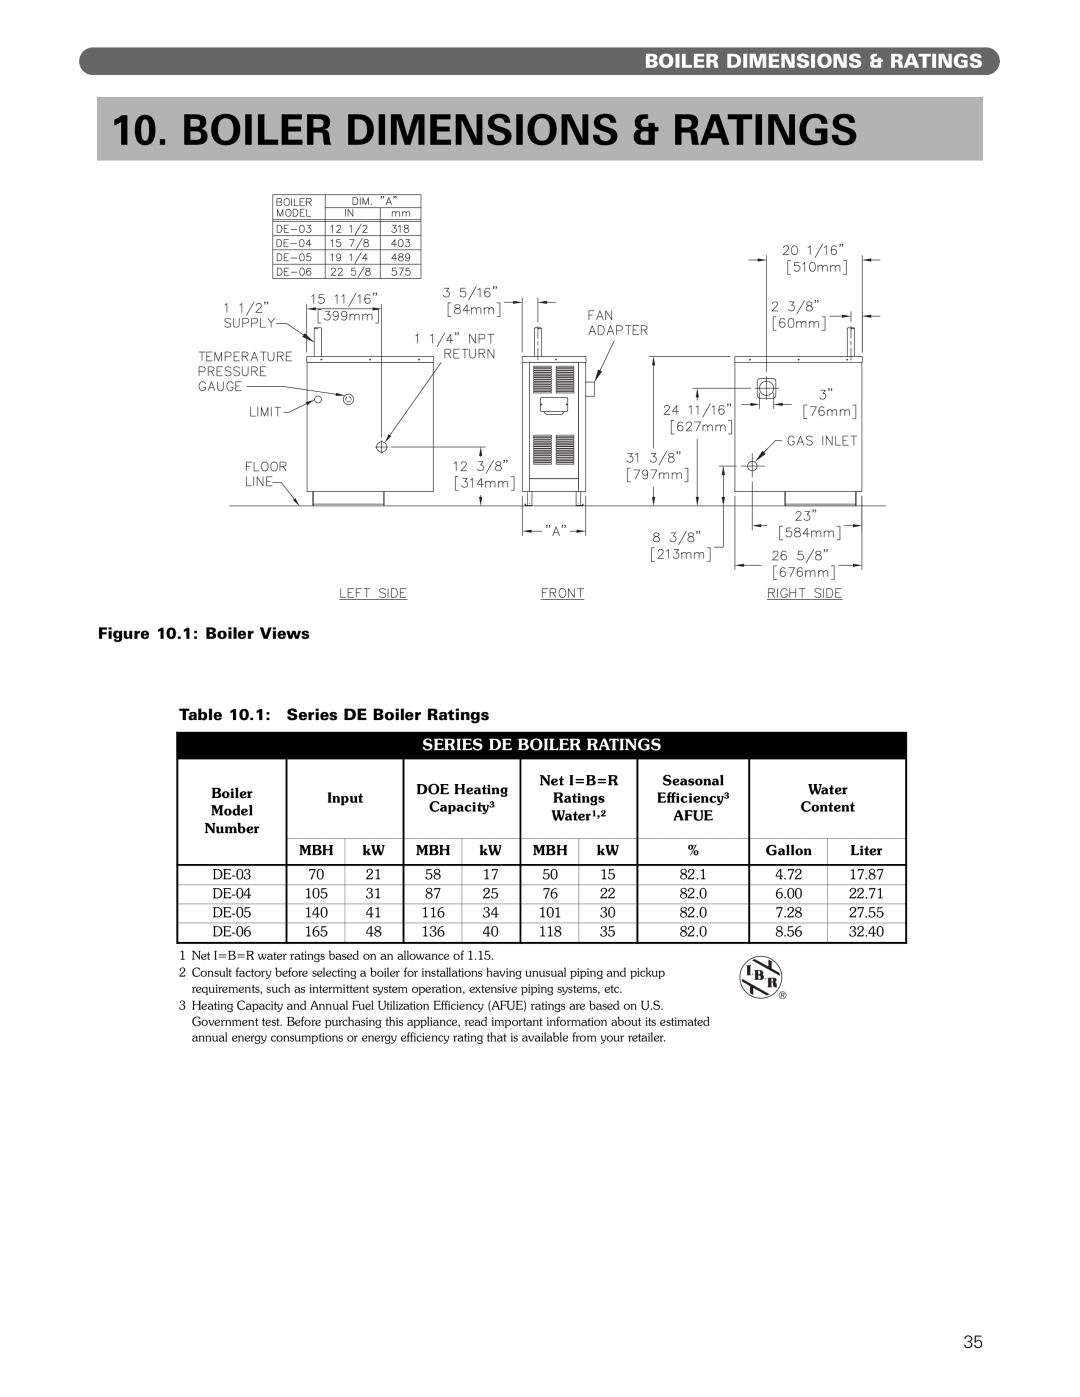 PB Heat DE manual Boiler Dimensions & Ratings, Series De Boiler Ratings 